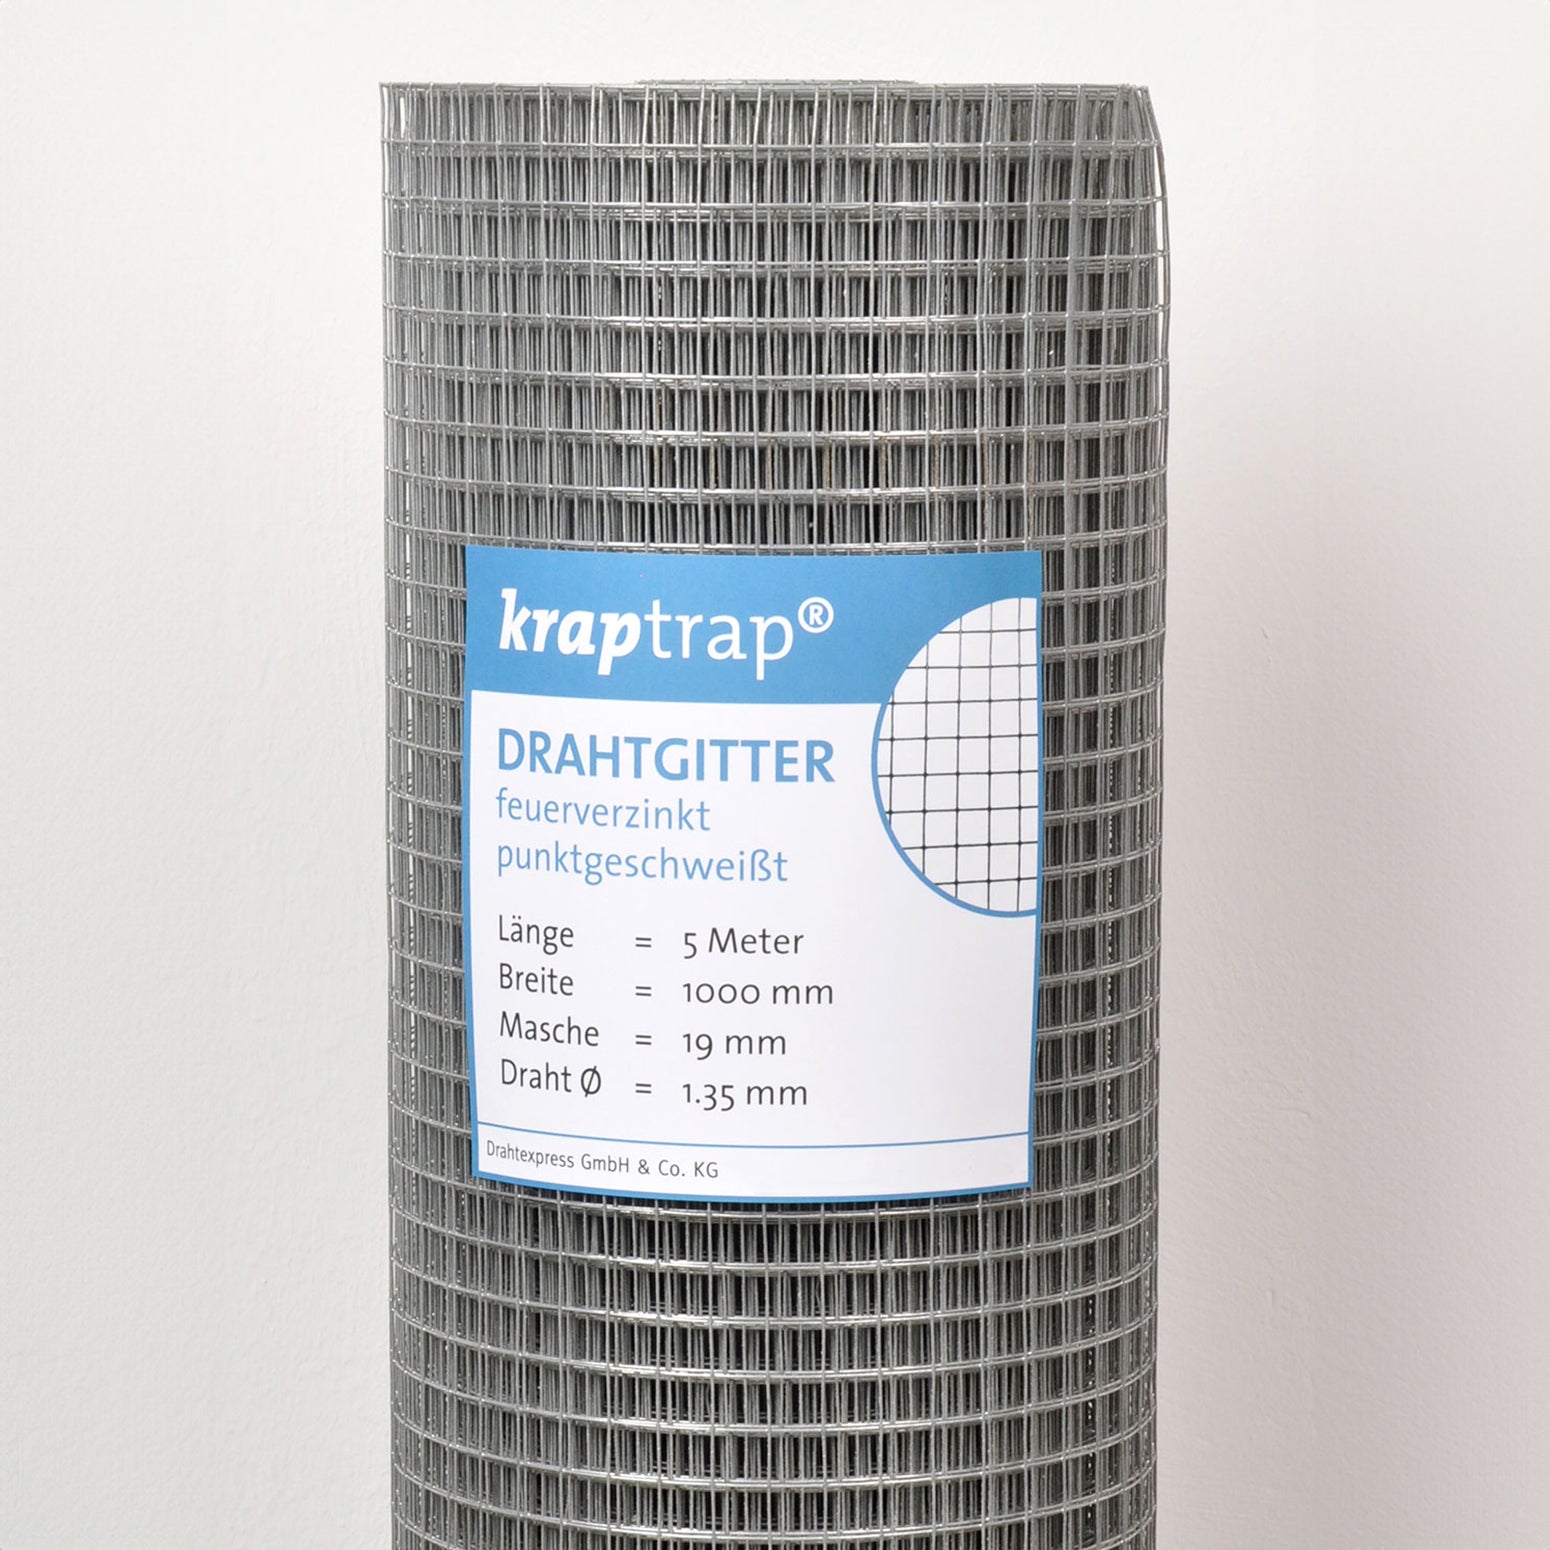 Kraptrap® Volierendraht Drahtgitter 19 mm Masche, 100 cm breit, 1,35mm Stärke